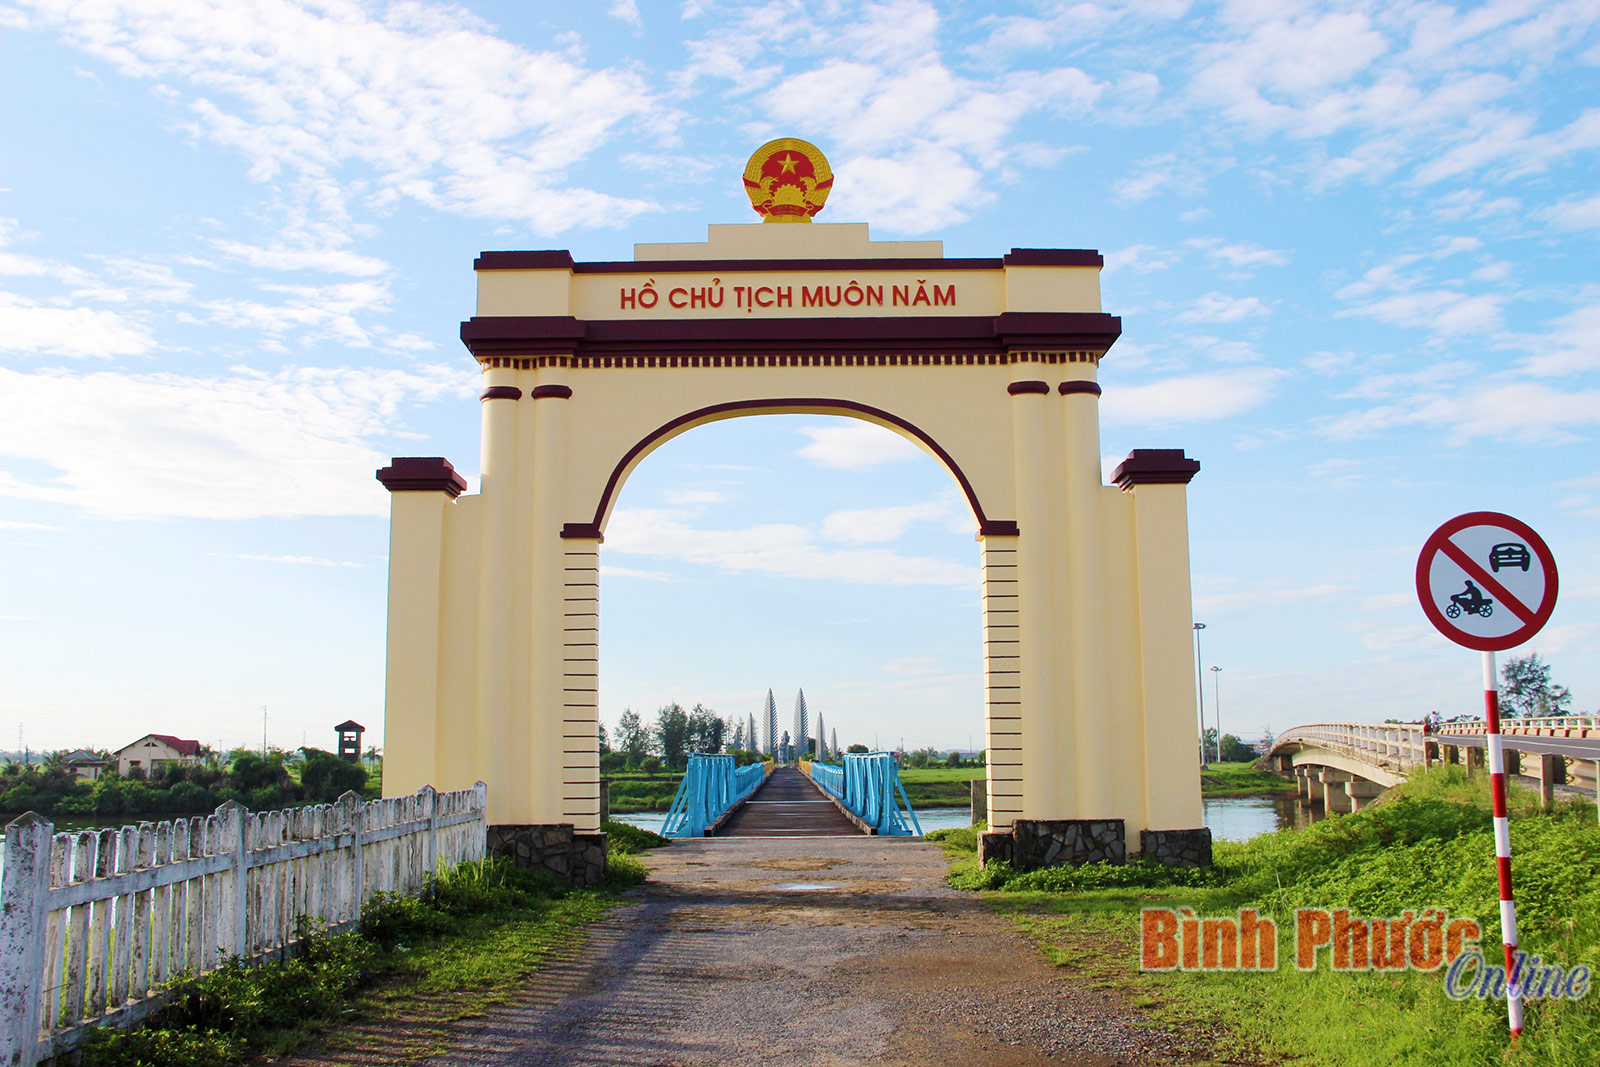 vùng đất thép - Vùng đất thép Việt Nam bao gồm nhiều tỉnh thành trong đó Quảng Trị cũng là một trong những địa điểm nổi tiếng. Điểm đến này được biết đến với nhiều di tích lịch sử và chiến tranh, cùng với cảnh quan đẹp , được bao phủ bởi những thửa ruộng bậc thang xanh mướt.